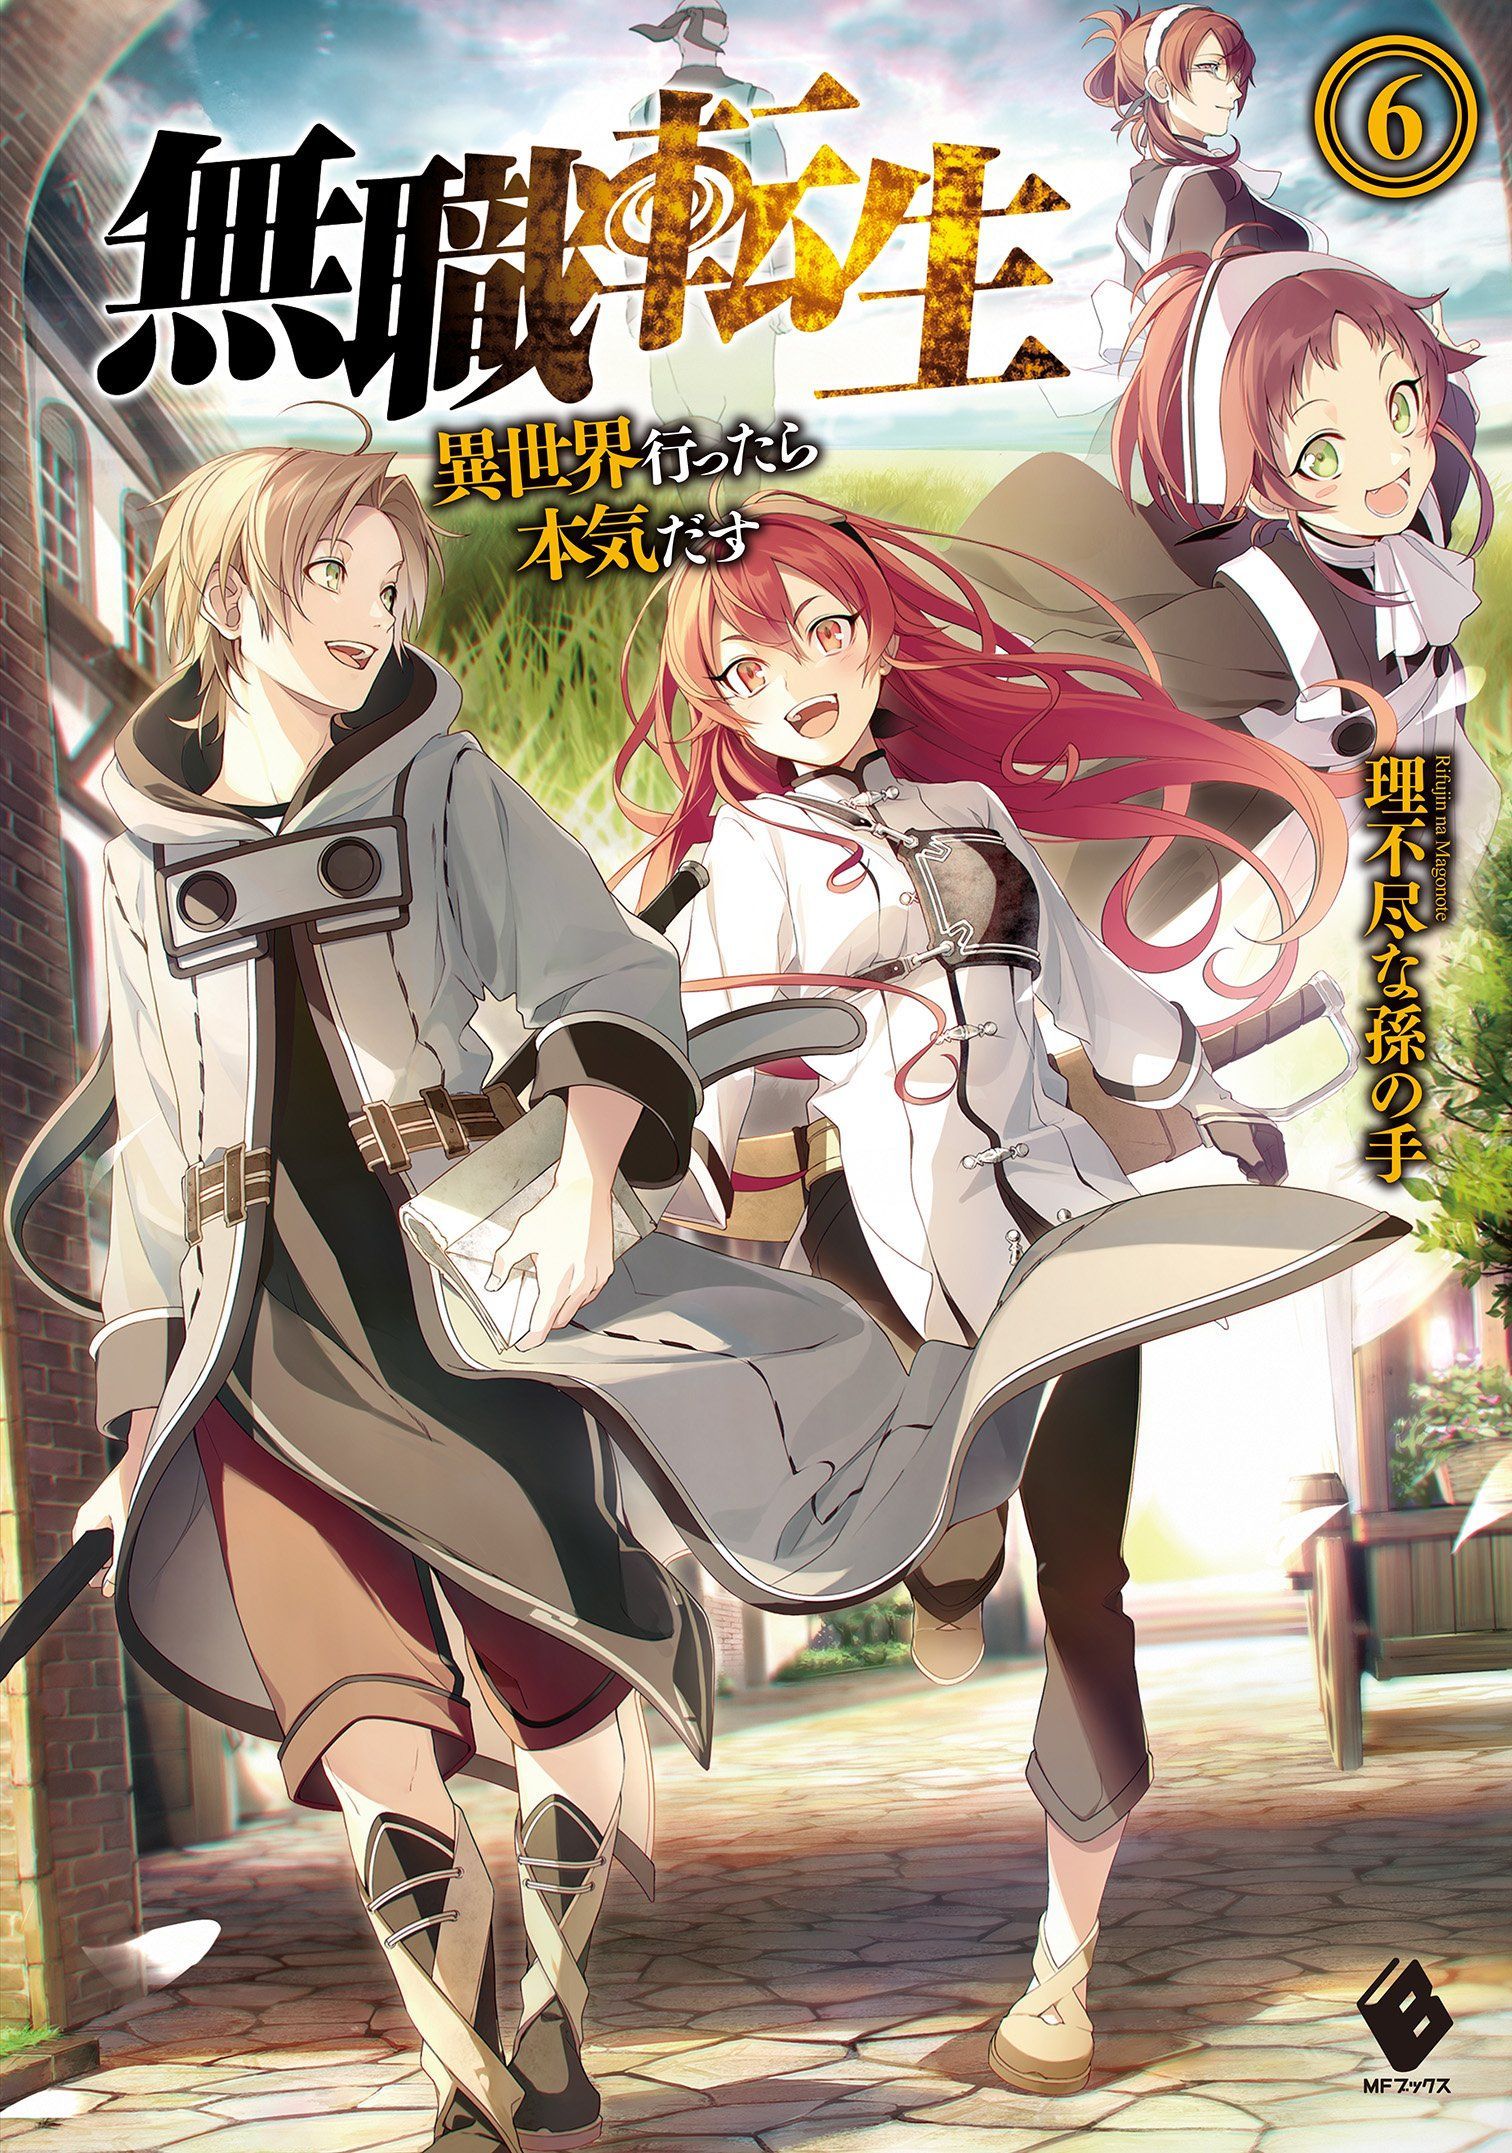 Mushoku Tensei HQ Light Novel Illustration. Light novel, Anime stories, Novels